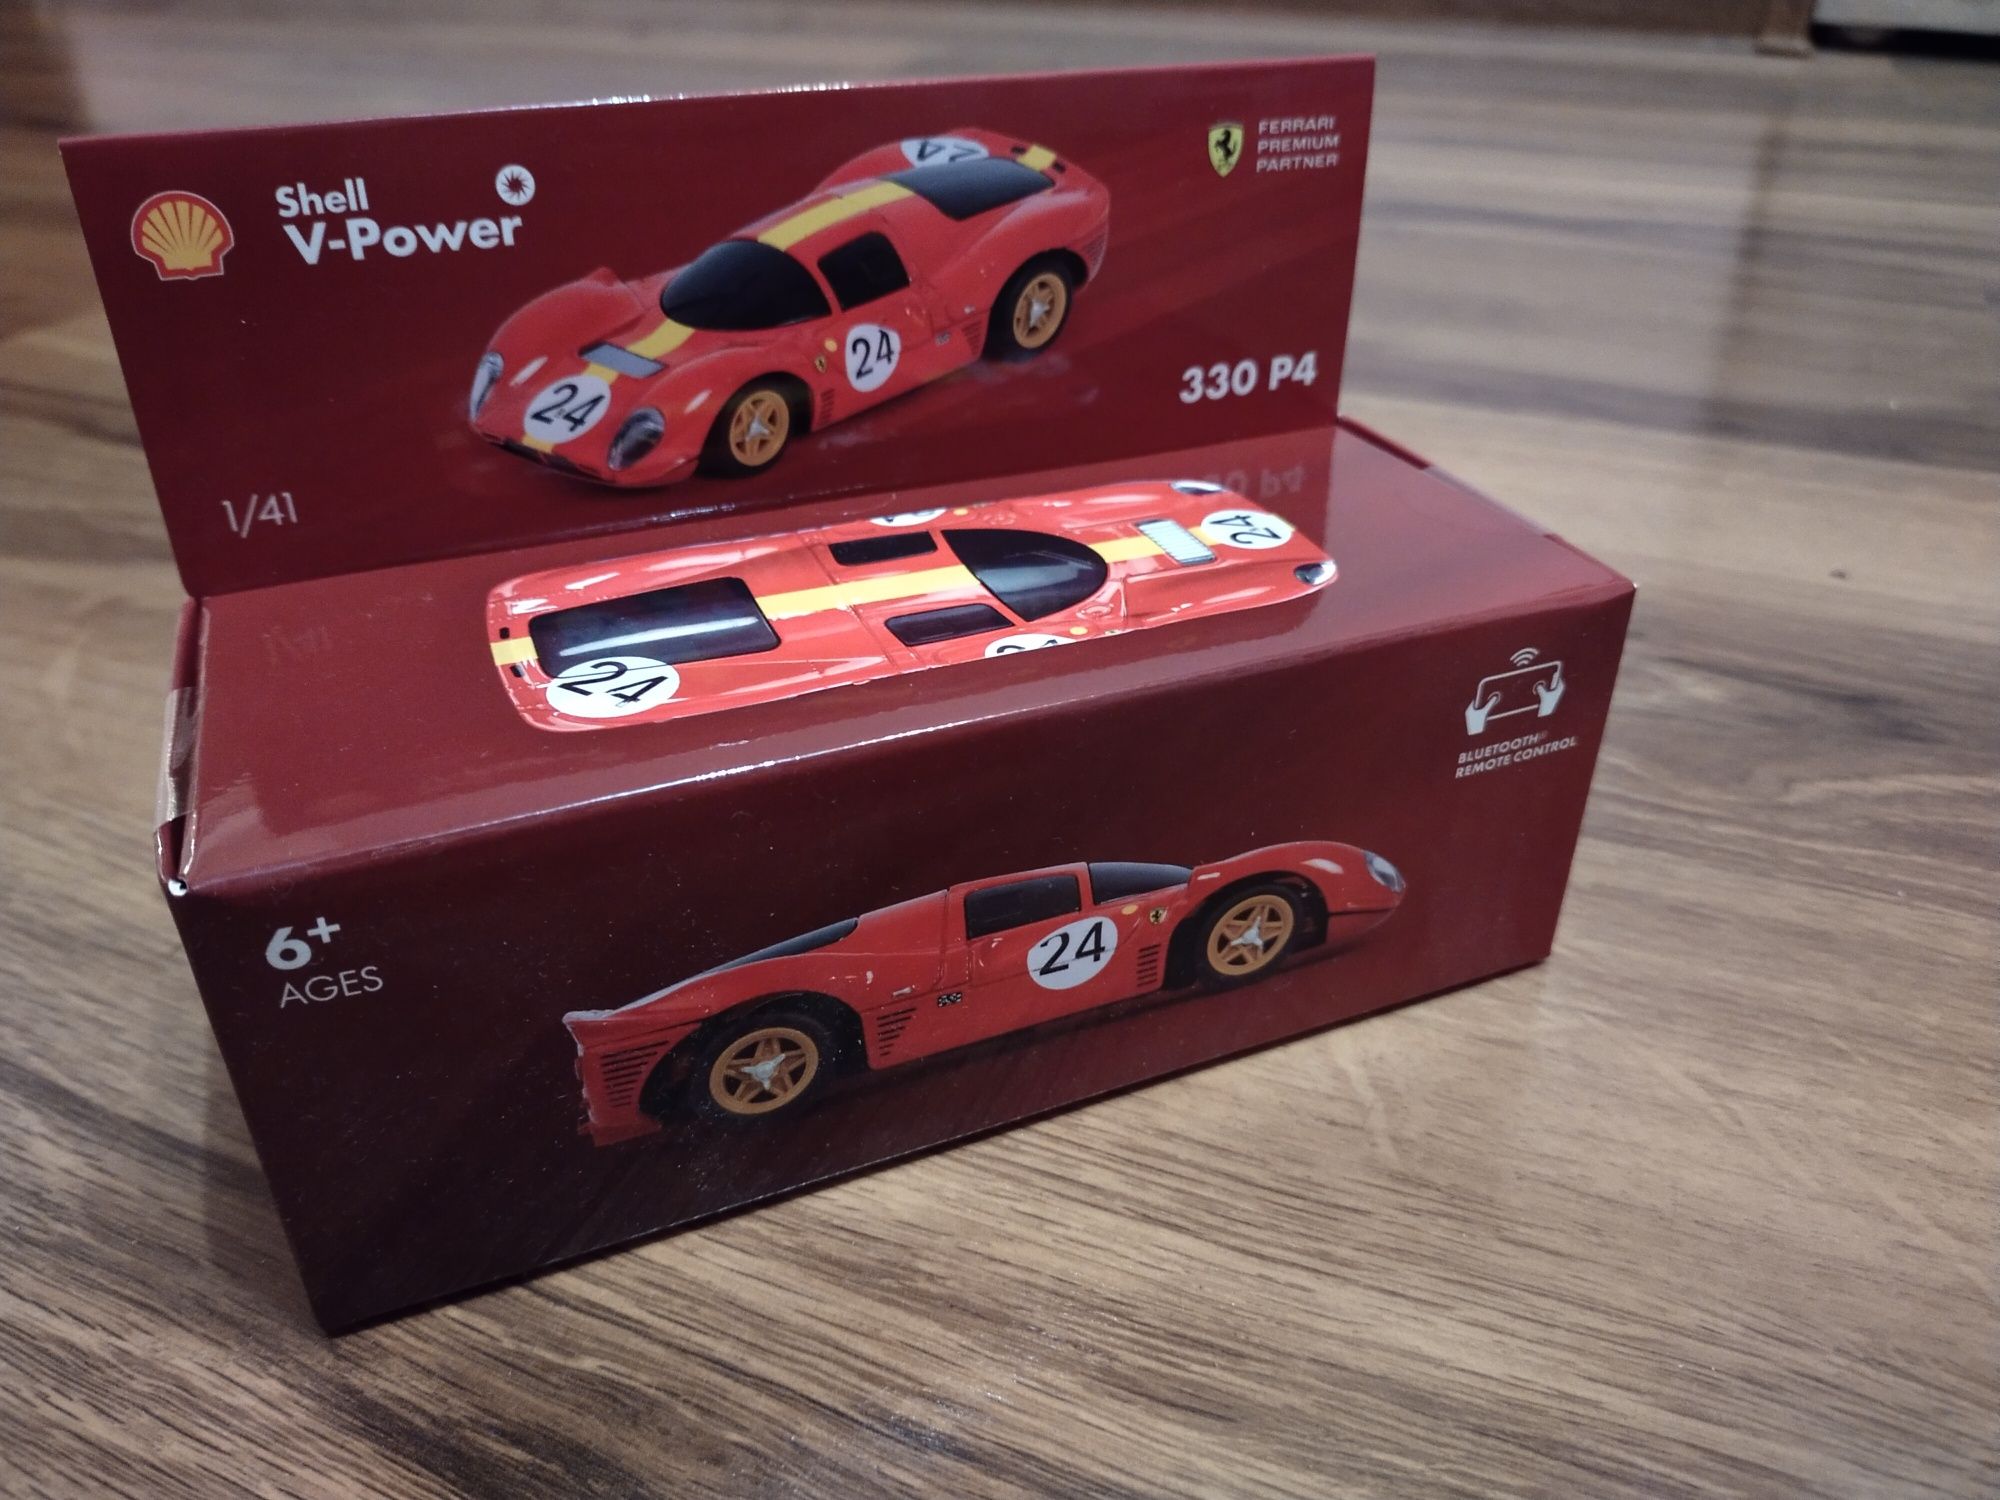 Samochód kolekcja Shell Ferrari 330 P4